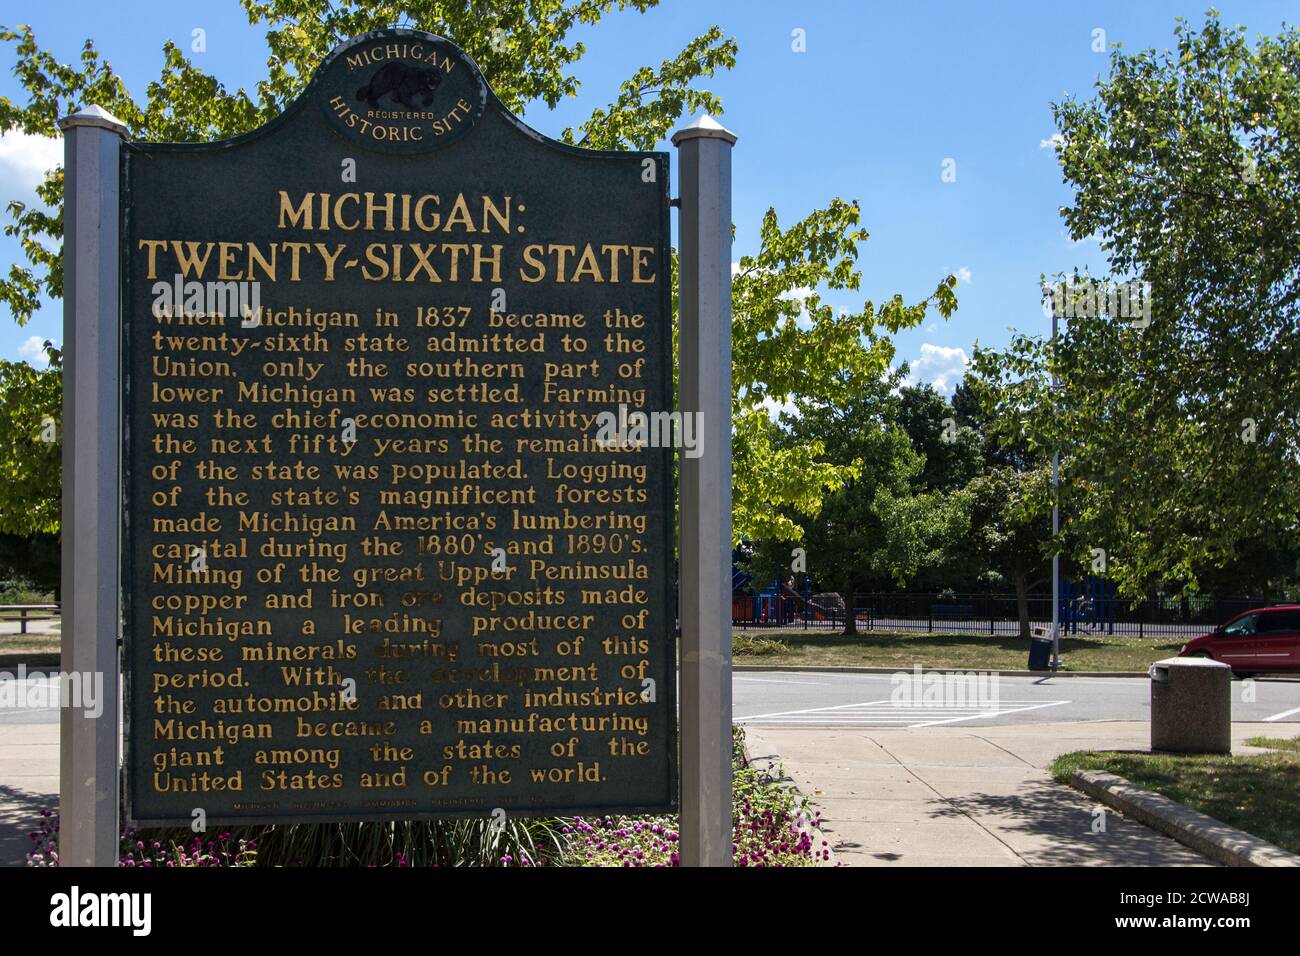 Marcatore storico che onora lo stato del Michigan come il ventiseiesimo stato negli Stati Uniti d'America. Foto Stock